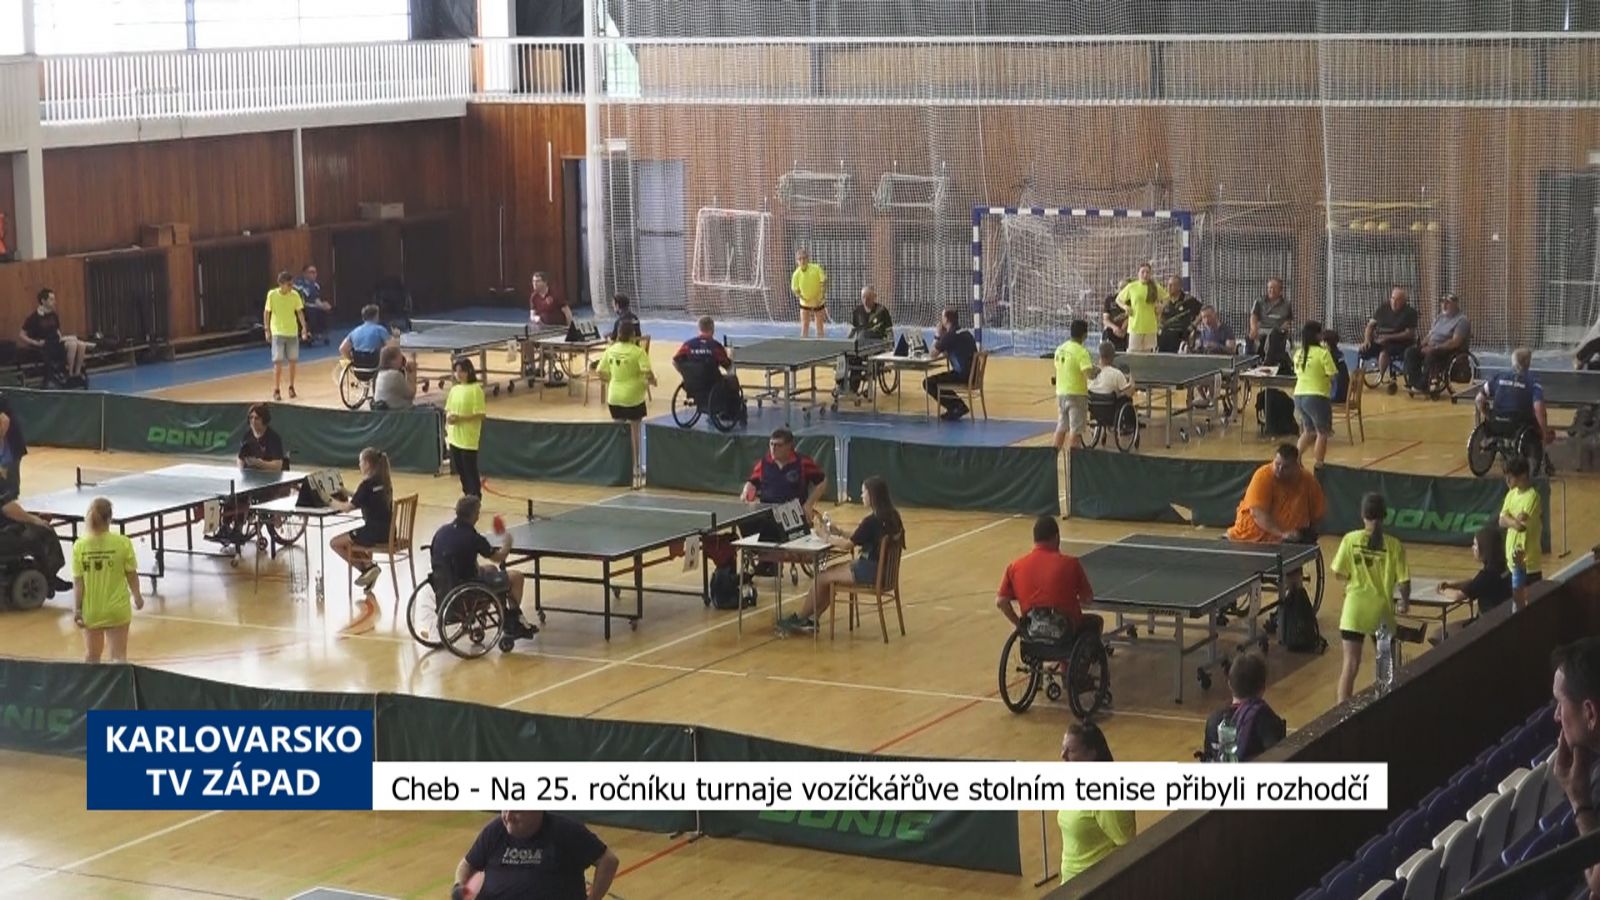 Cheb: Na 25. ročníku turnaje vozíčkářů ve stolním tenise přibyli rozhodčí (TV Západ)